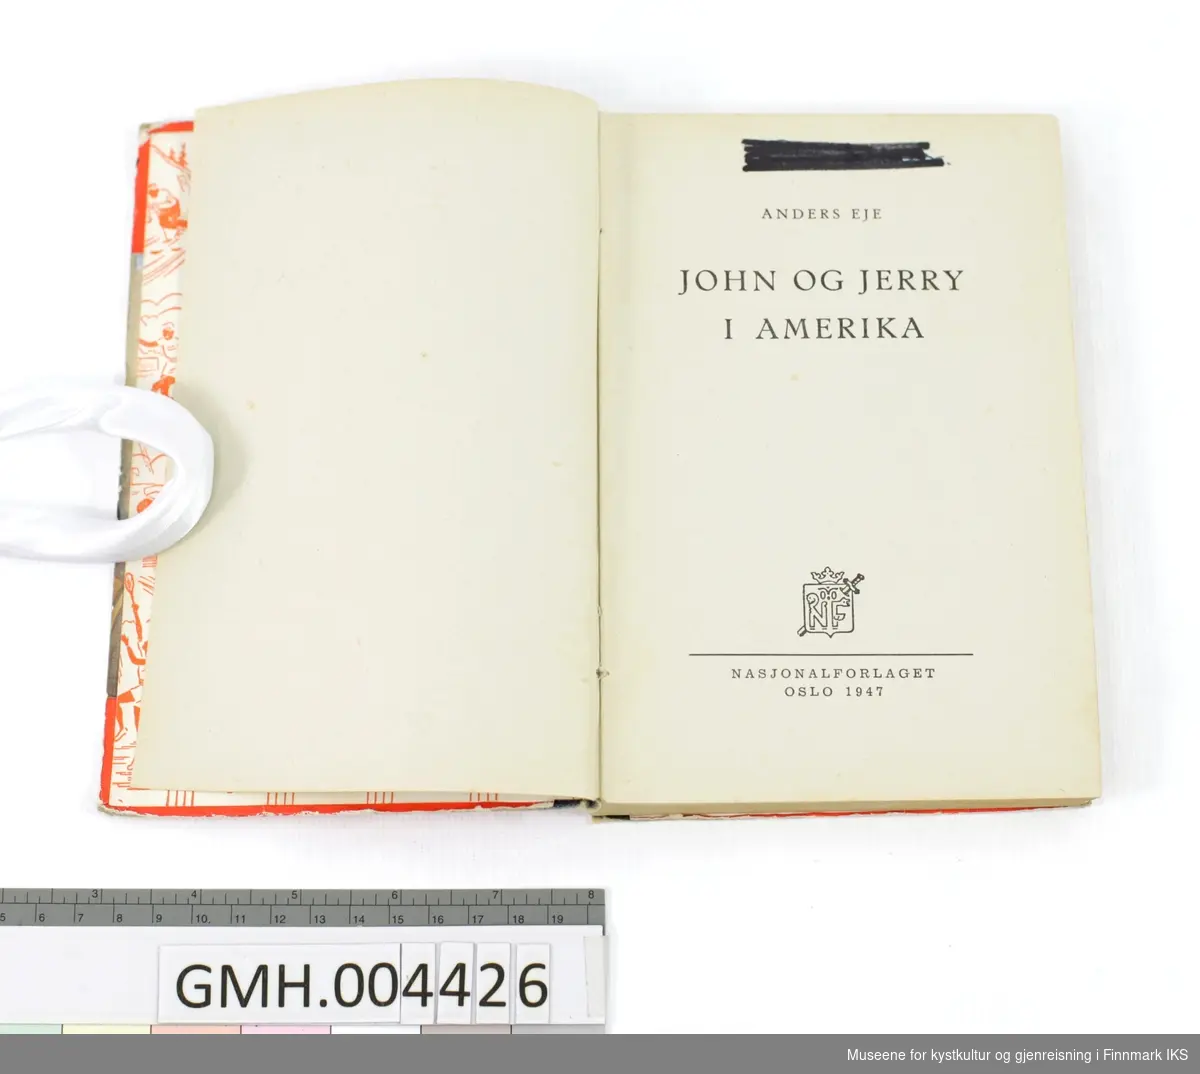 Bok: Anders Eje. John og Jerry i Amerika. Nasjonalforlaget, Oslo, 1947.